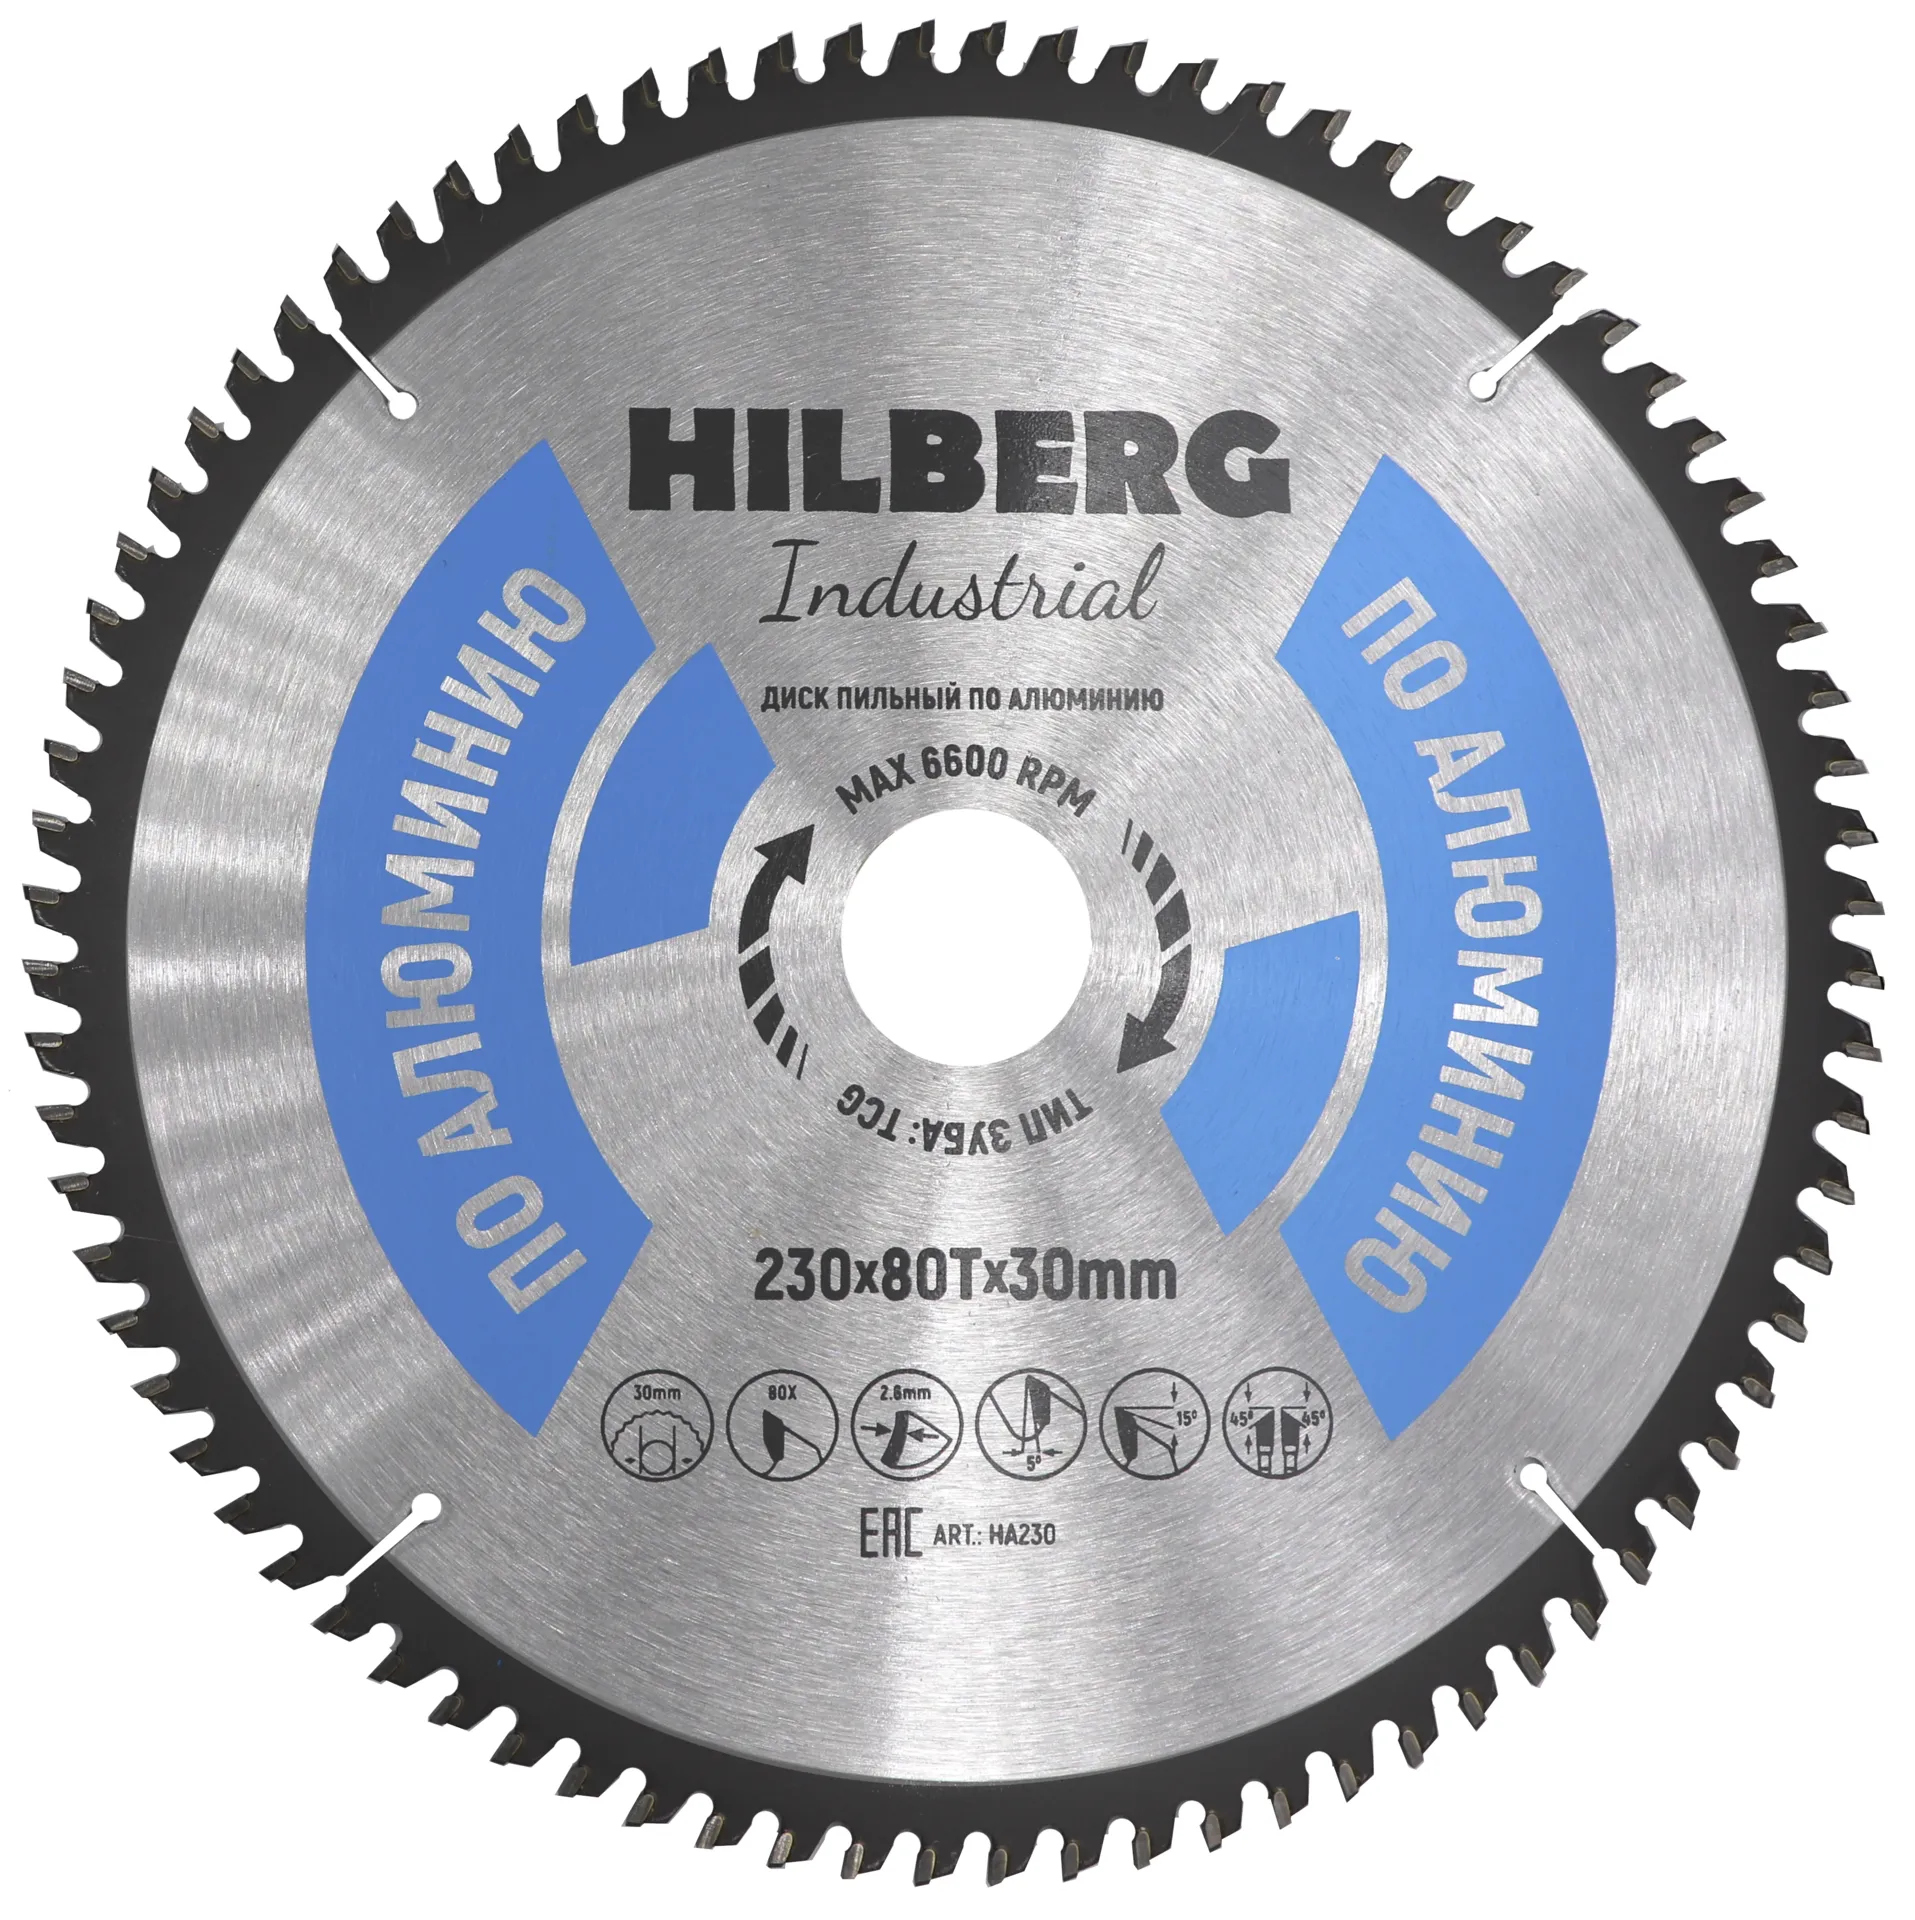 Диск пильный по алюминию 230х80Tx30мм Hilberg Industrial HA230